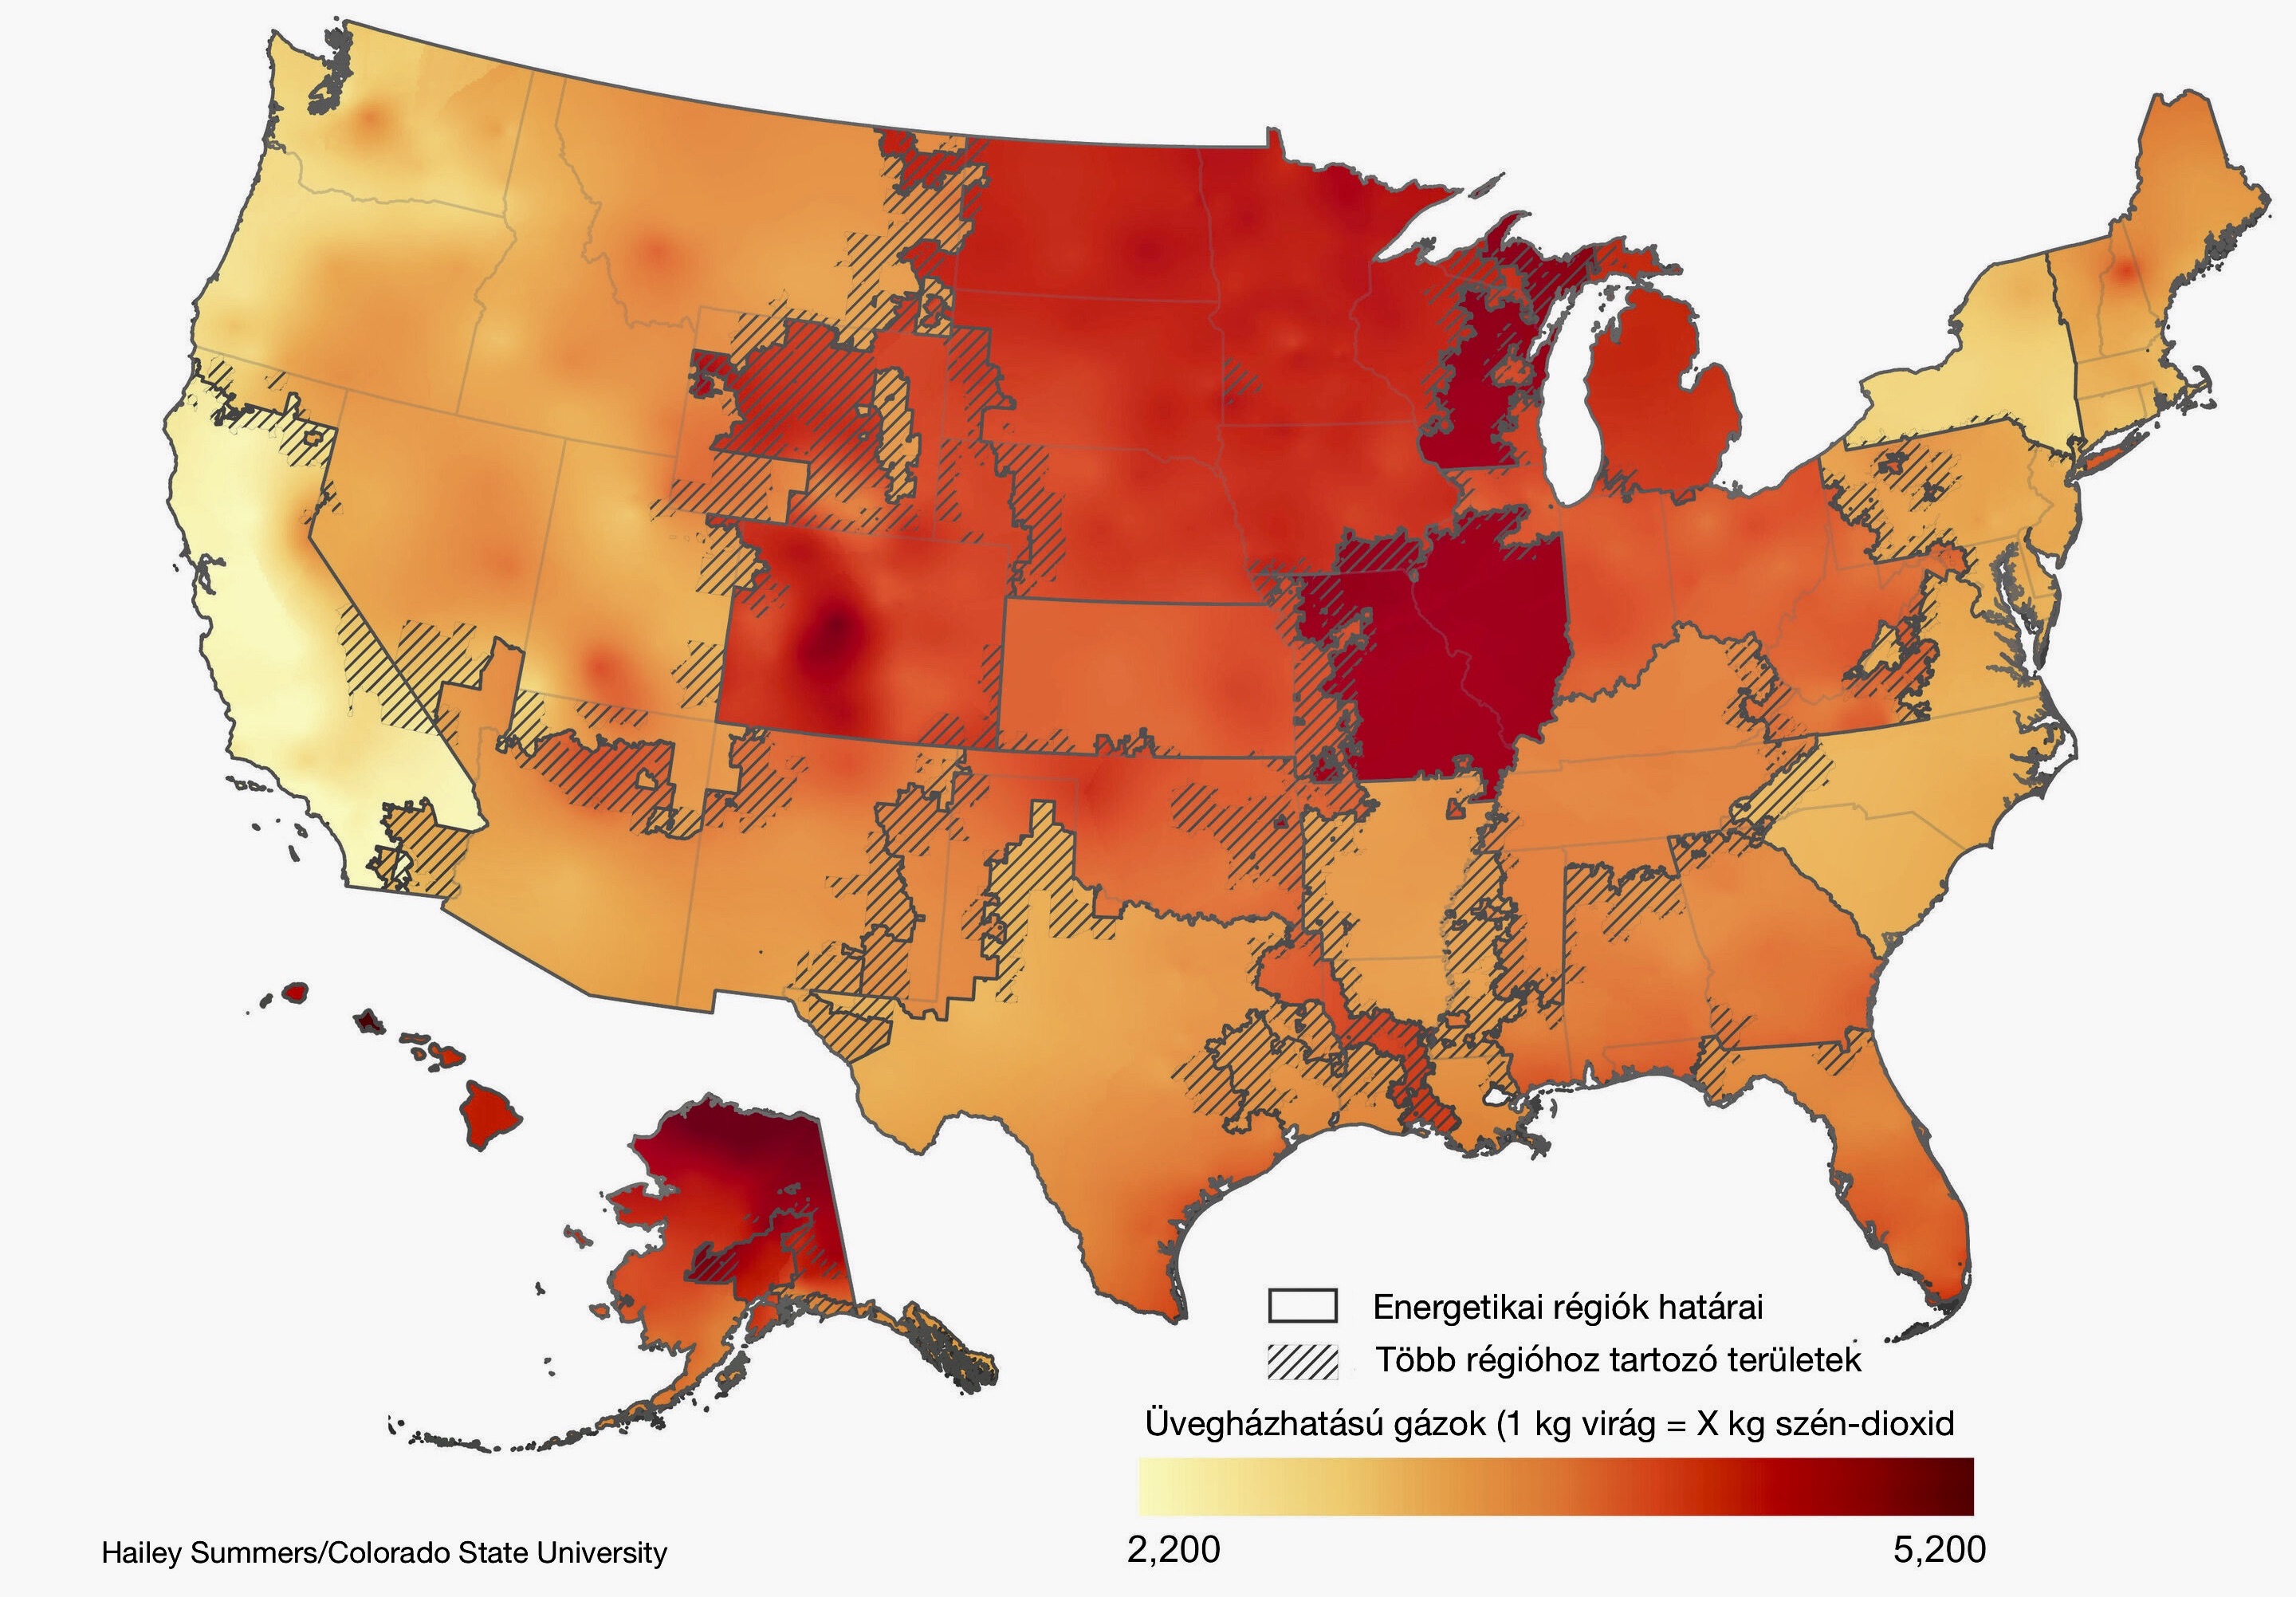 A kannabisztermesztés szénlábnyoma az Egyesült Államok különböző régióiban.